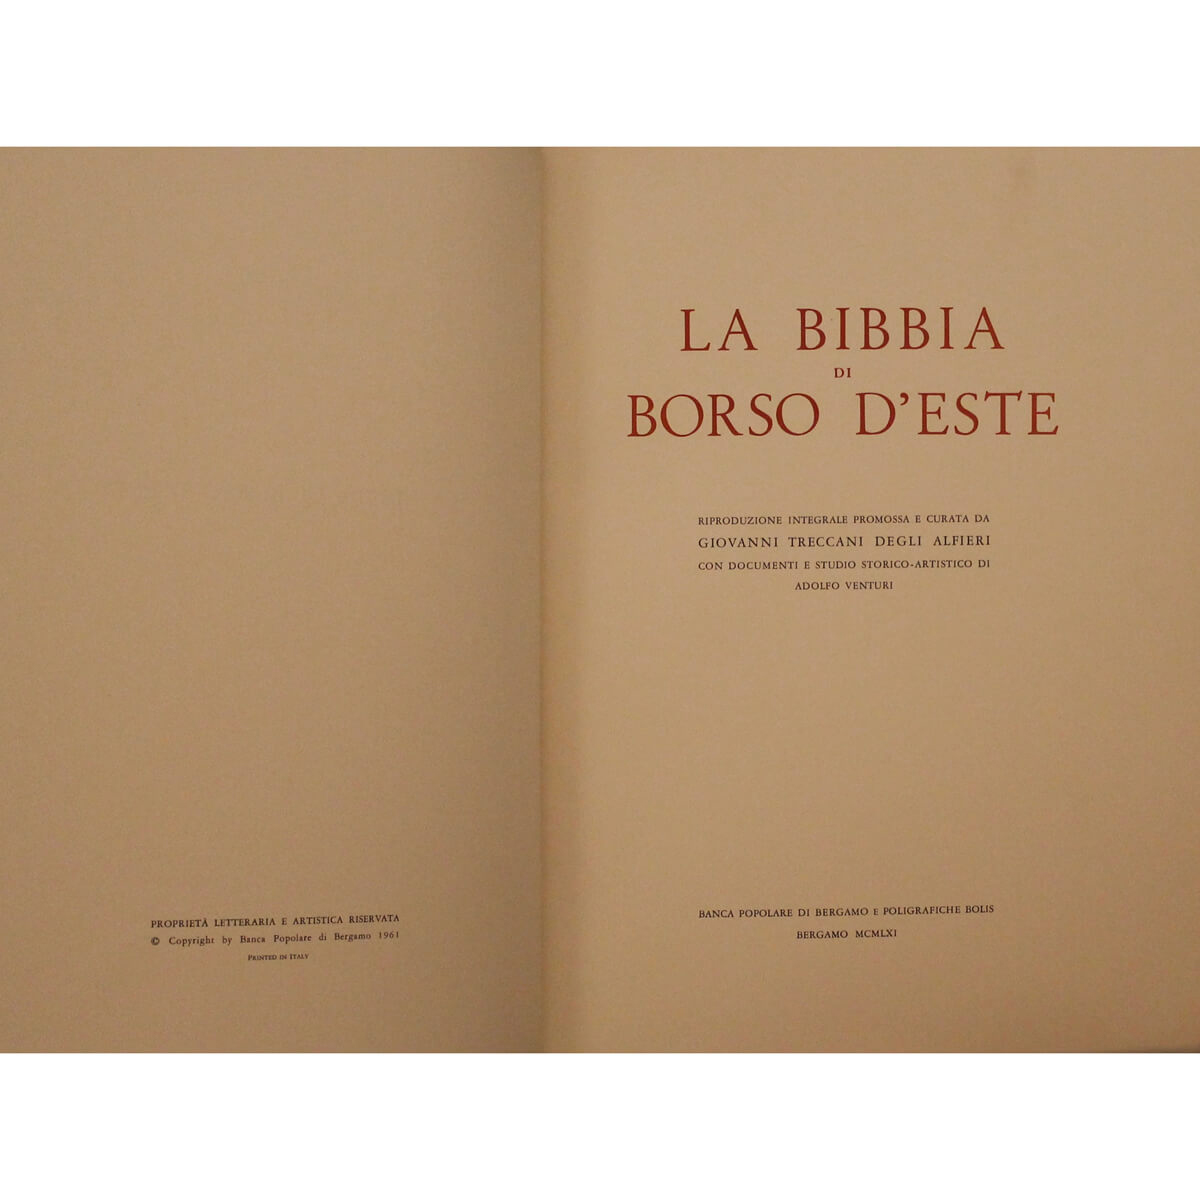 2 LA BIBBIA DI BORSO D'ESTE. Riproduzione integrale - Image 2 of 2